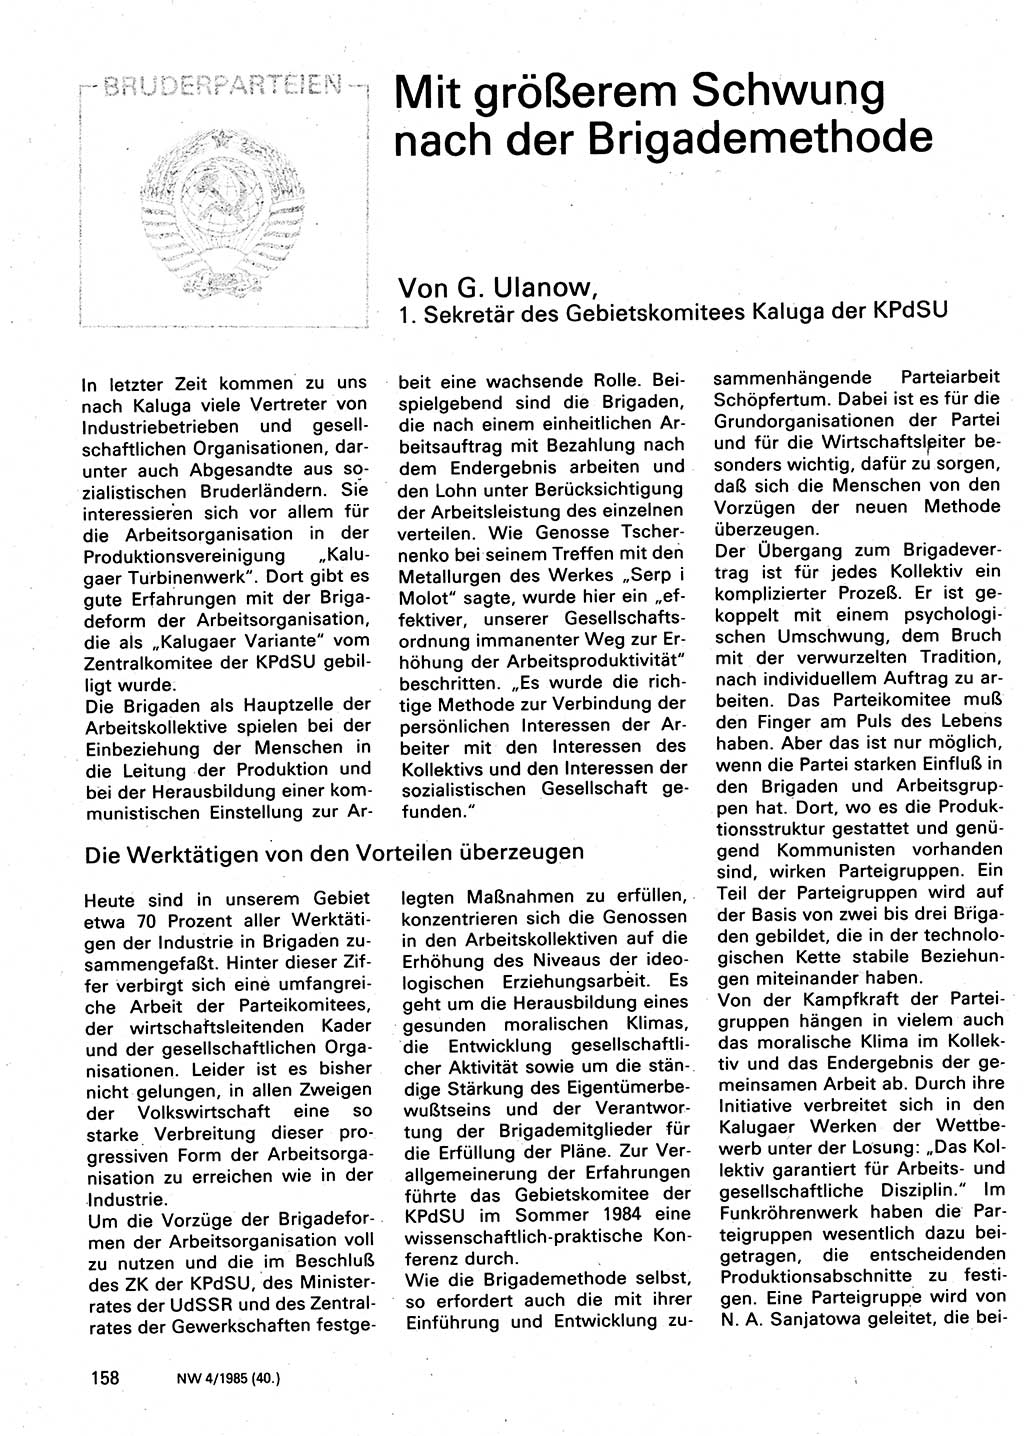 Neuer Weg (NW), Organ des Zentralkomitees (ZK) der SED (Sozialistische Einheitspartei Deutschlands) für Fragen des Parteilebens, 40. Jahrgang [Deutsche Demokratische Republik (DDR)] 1985, Seite 158 (NW ZK SED DDR 1985, S. 158)